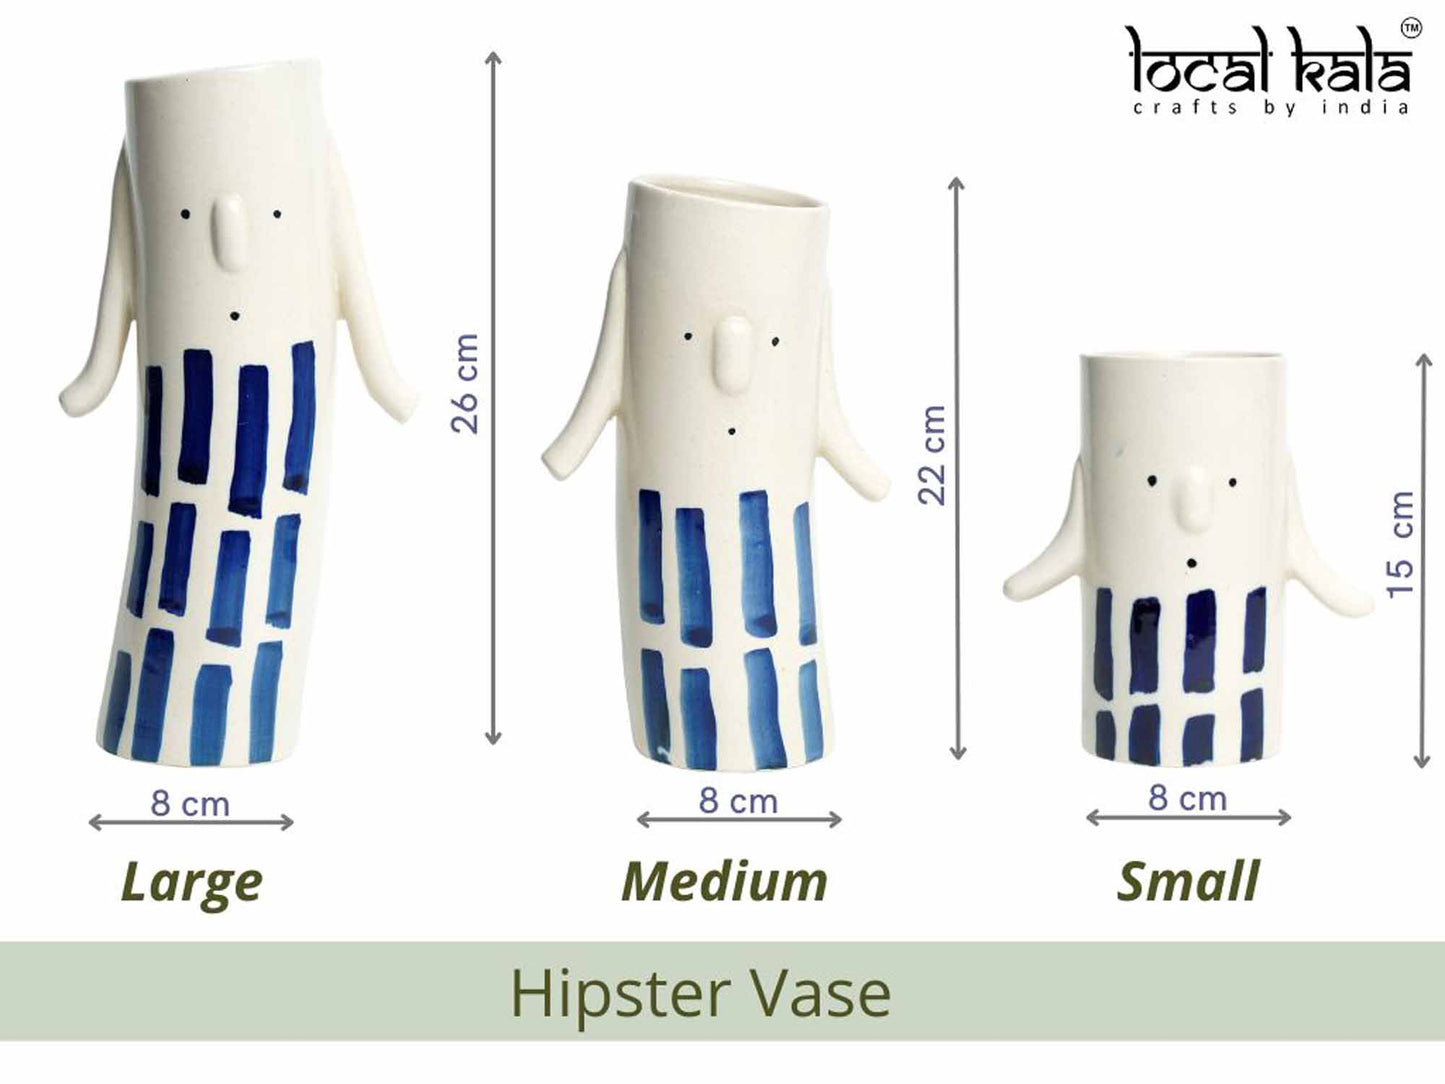 Hipster vase